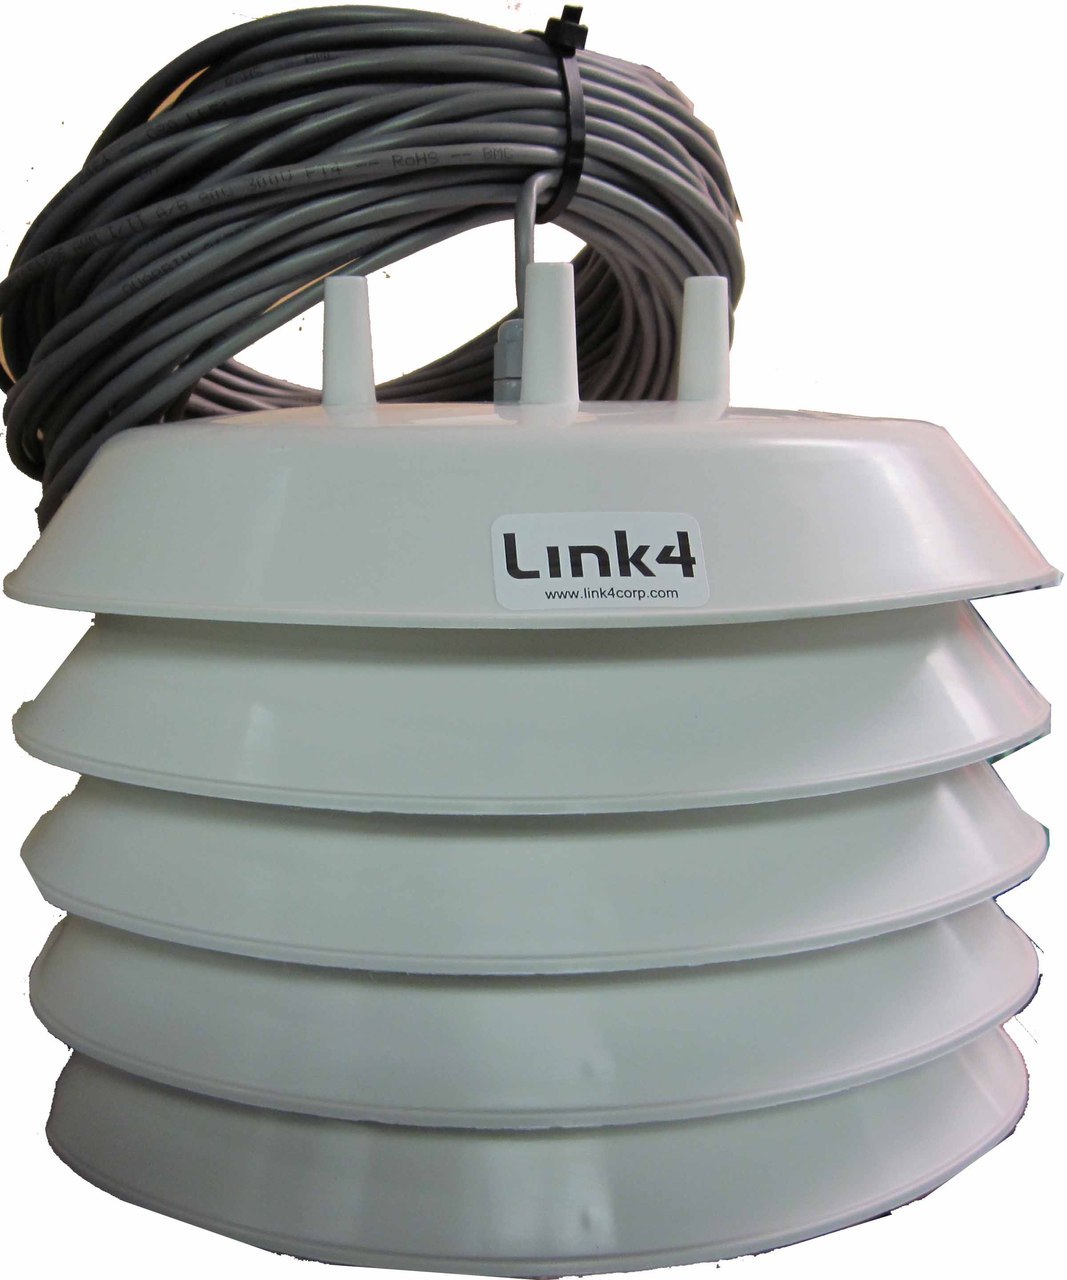 Link4 Indoor Digital Temperature & Humidity Sensor - Climate Controls